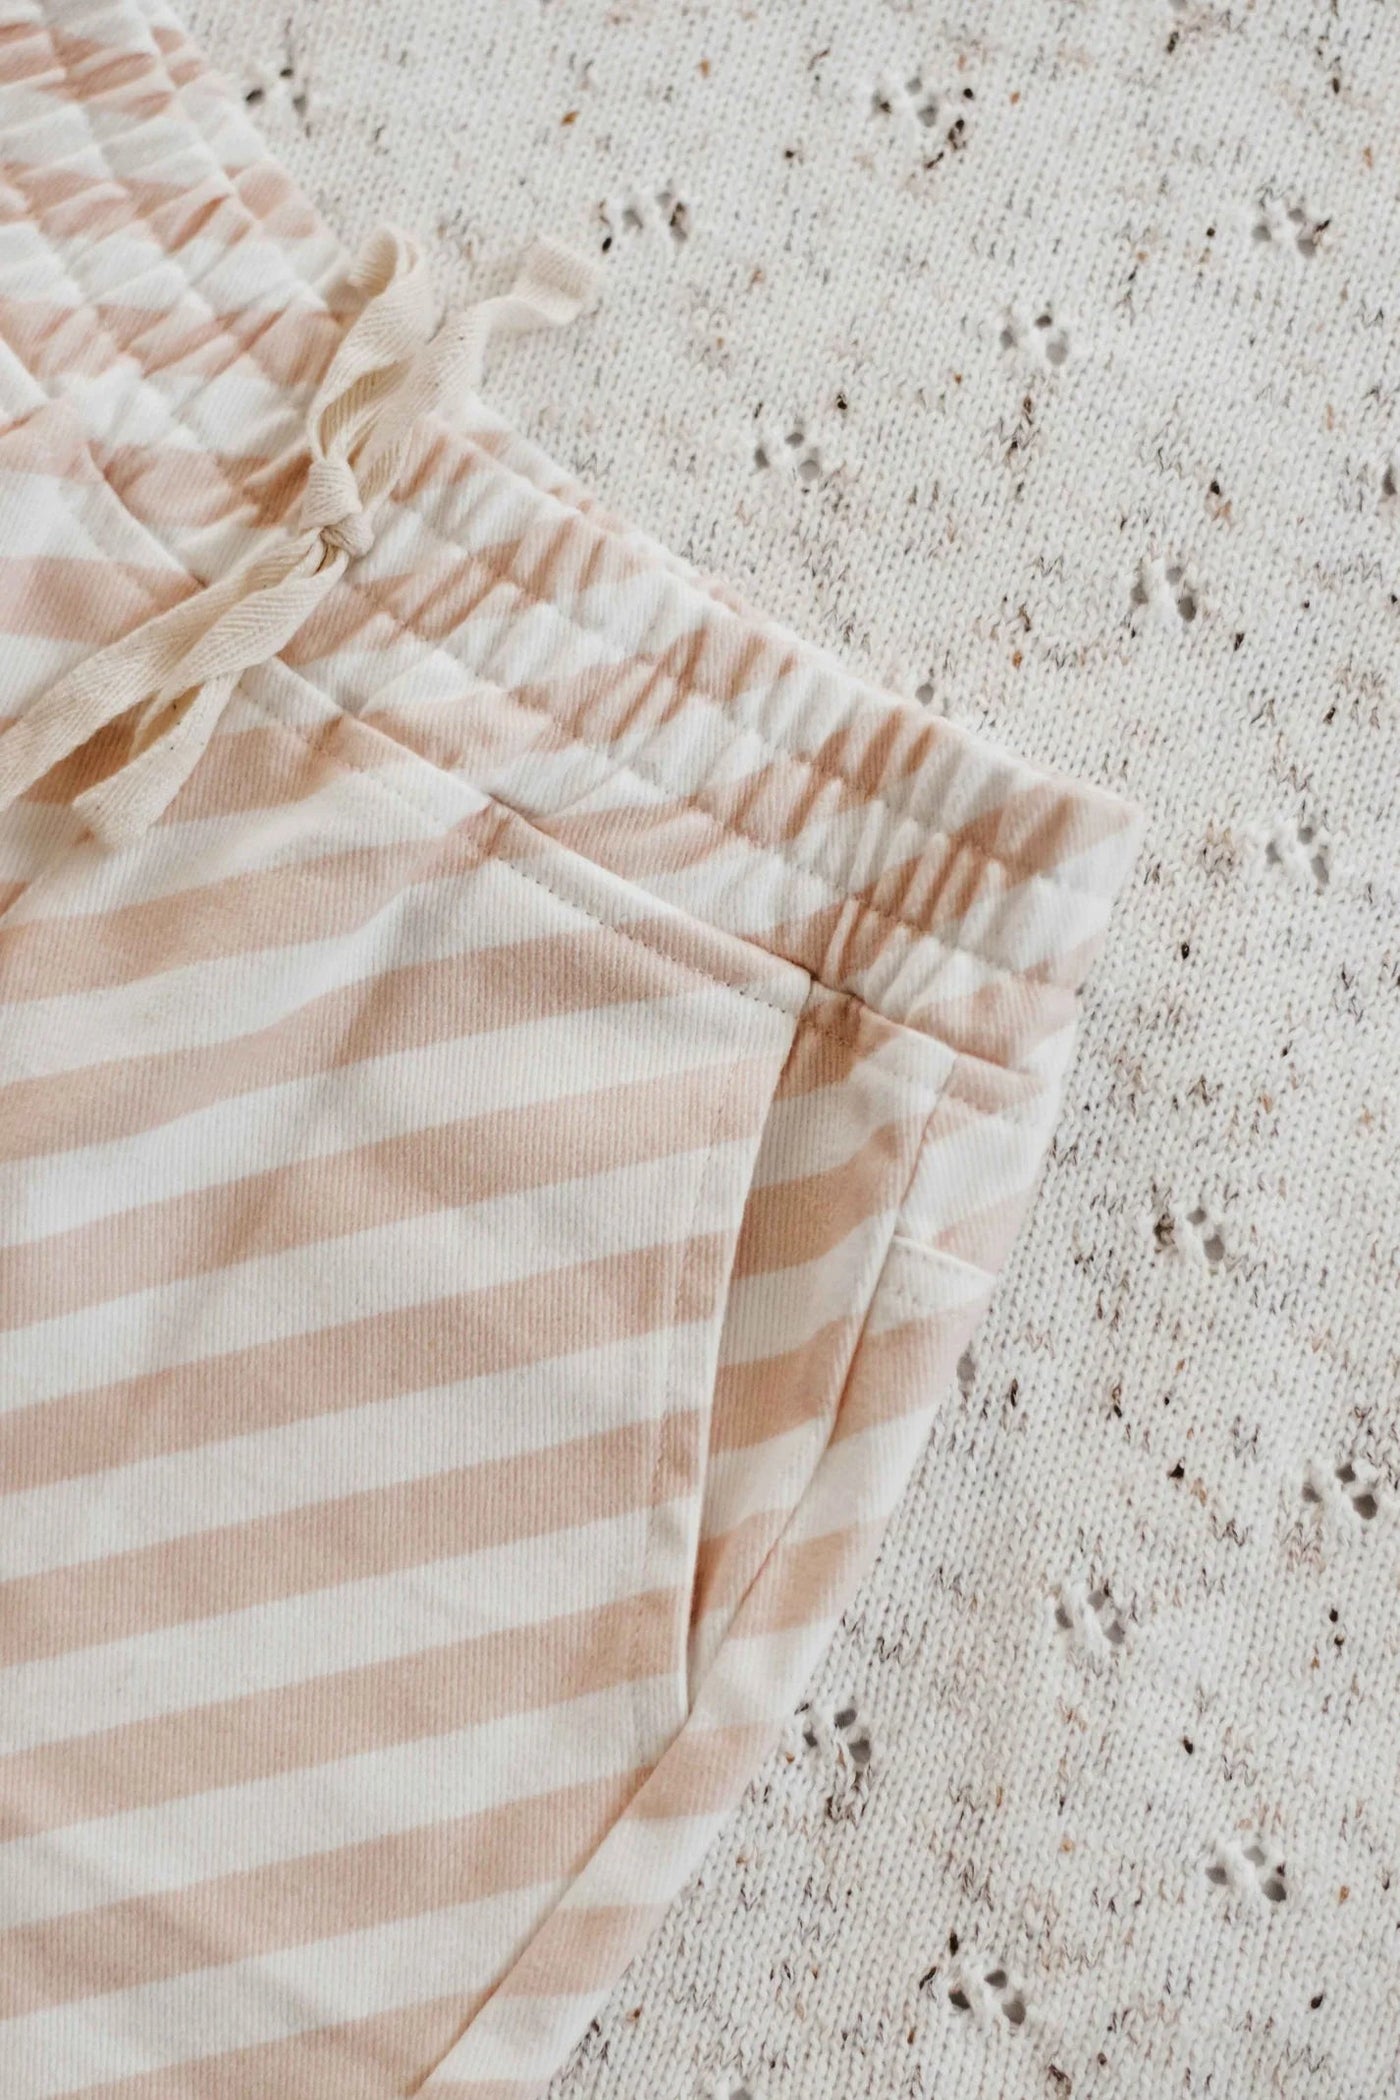 Bencer & Hazelnut Denim Shorts - Peach Stripes Shorts Bencer & Hazelnut 